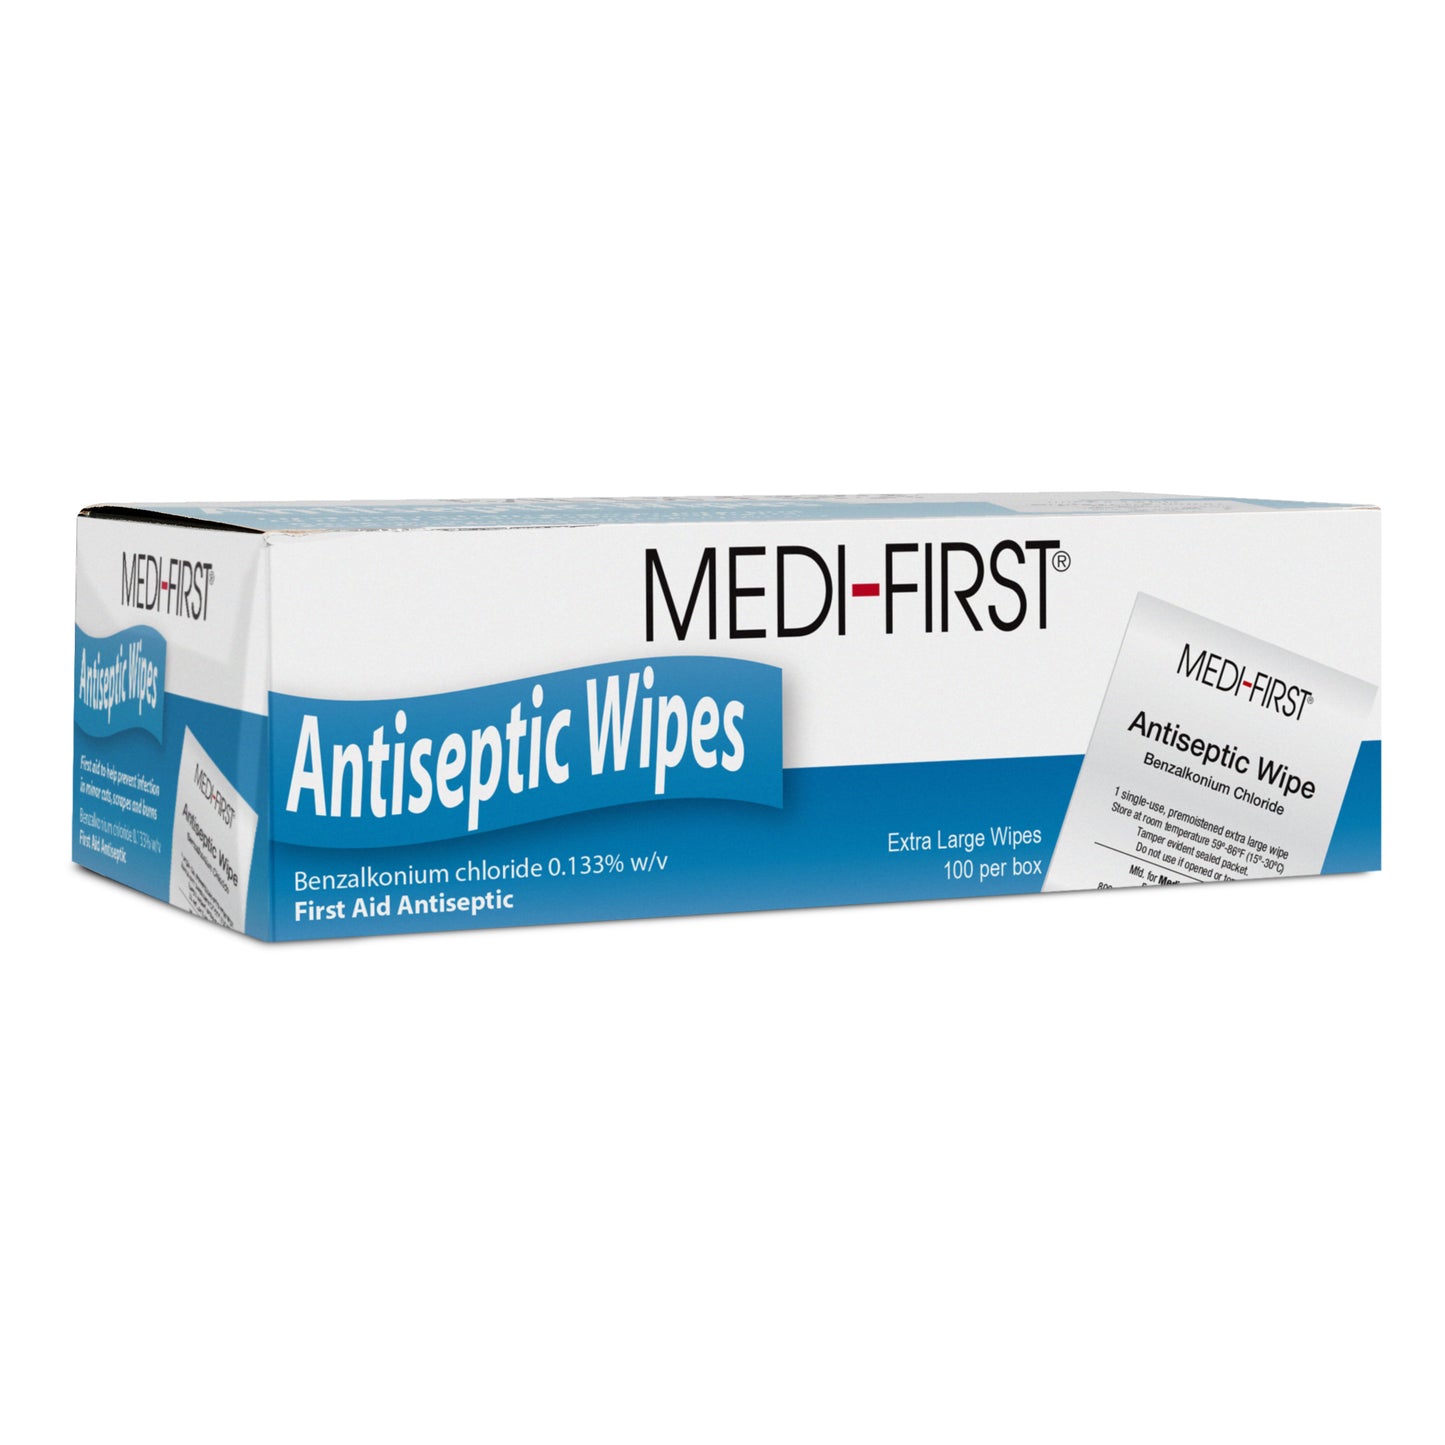 Antiseptic Wipes